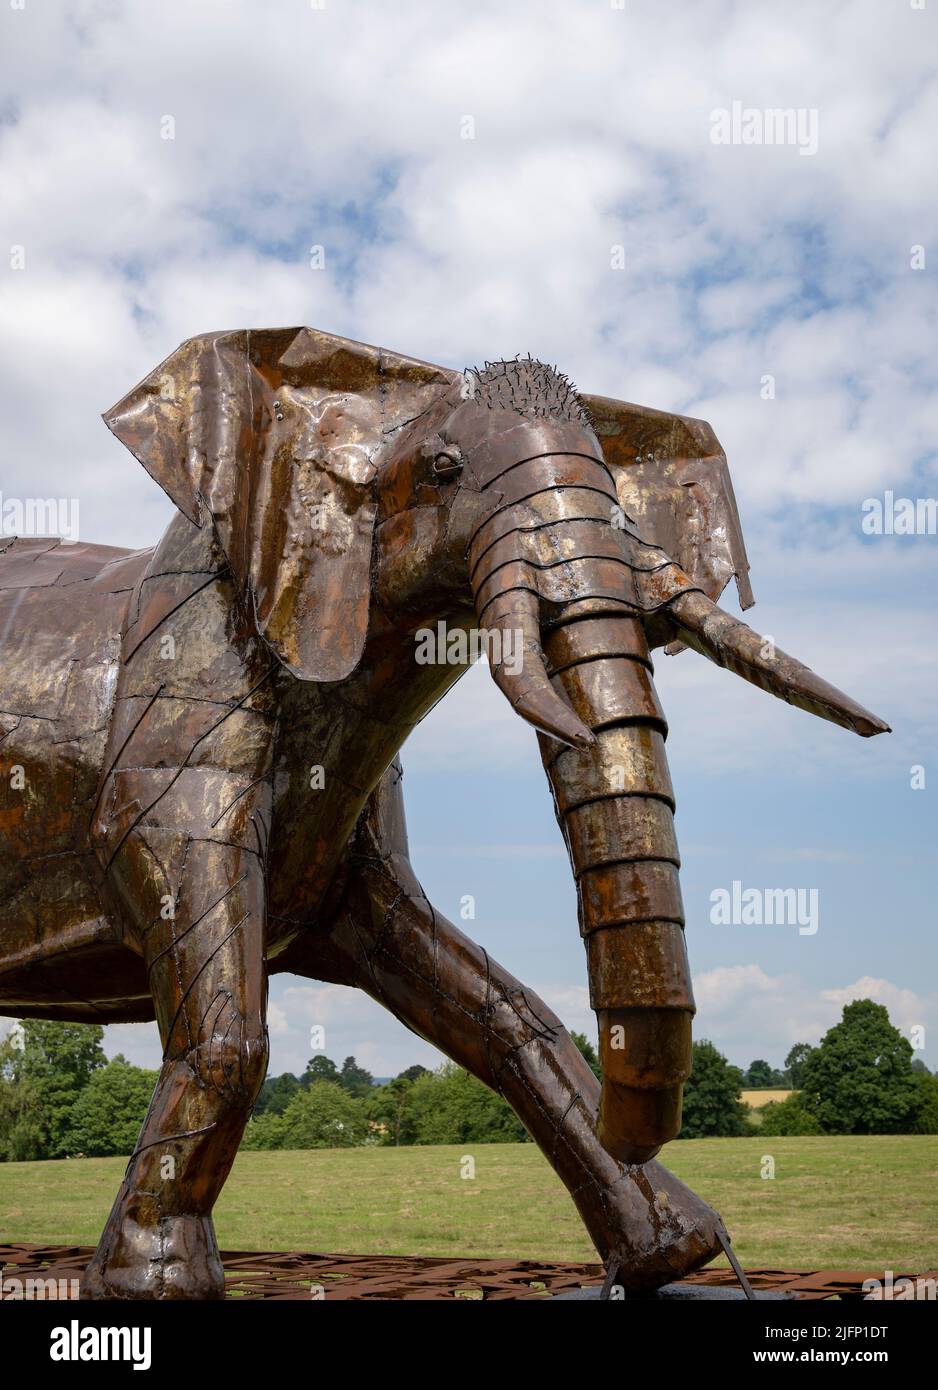 The British Ironwork Centre, Exposición/Escultura de Elefantes Asiáticos Foto de stock